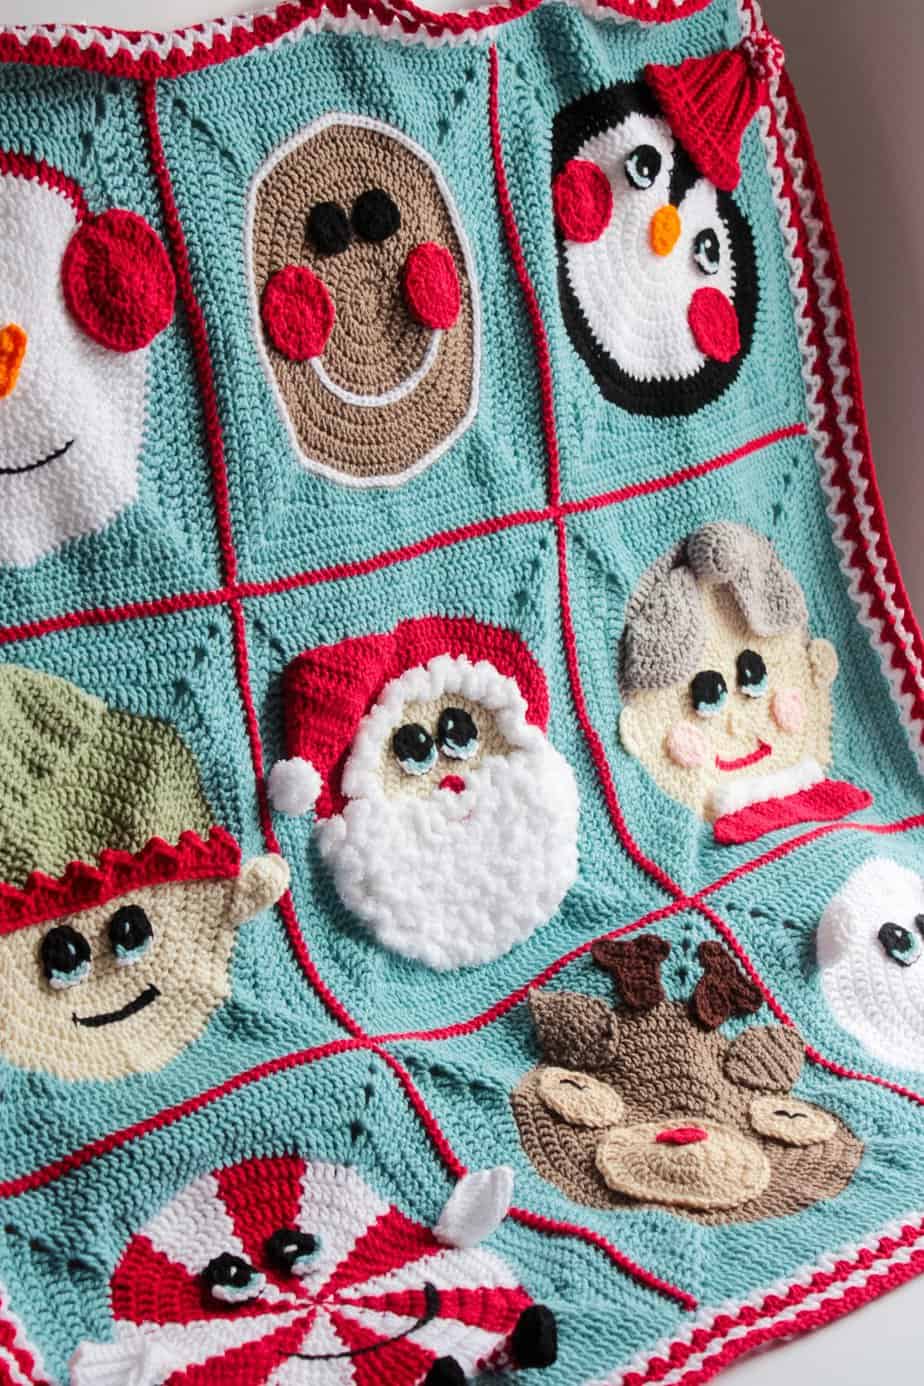 Crochet granny Square blanket for Christmas